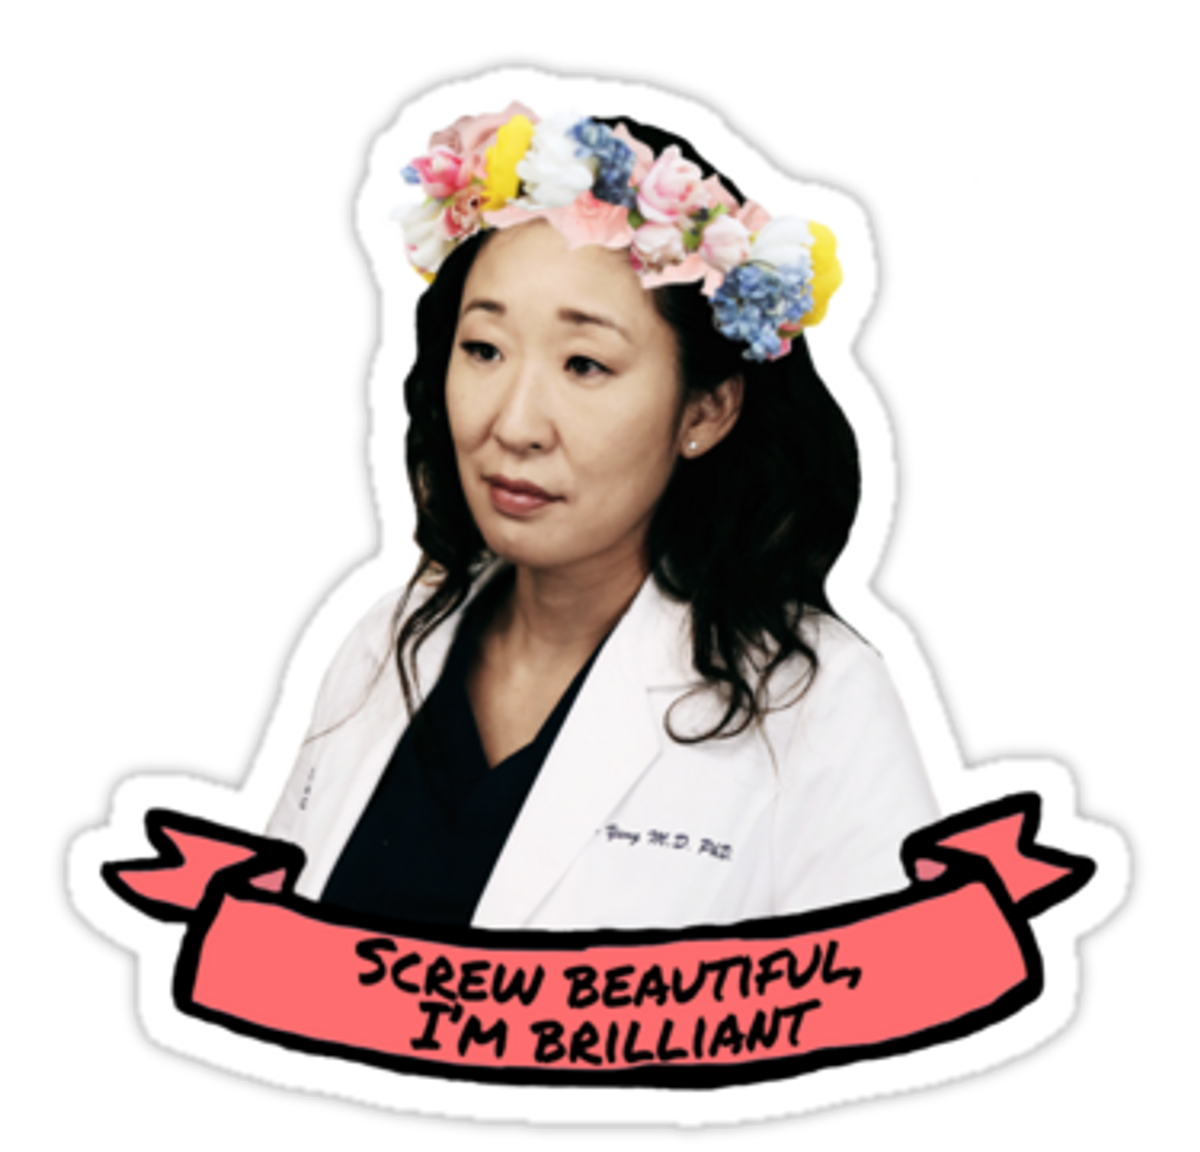 15 Ways We Should All Be More Like Cristina Yang